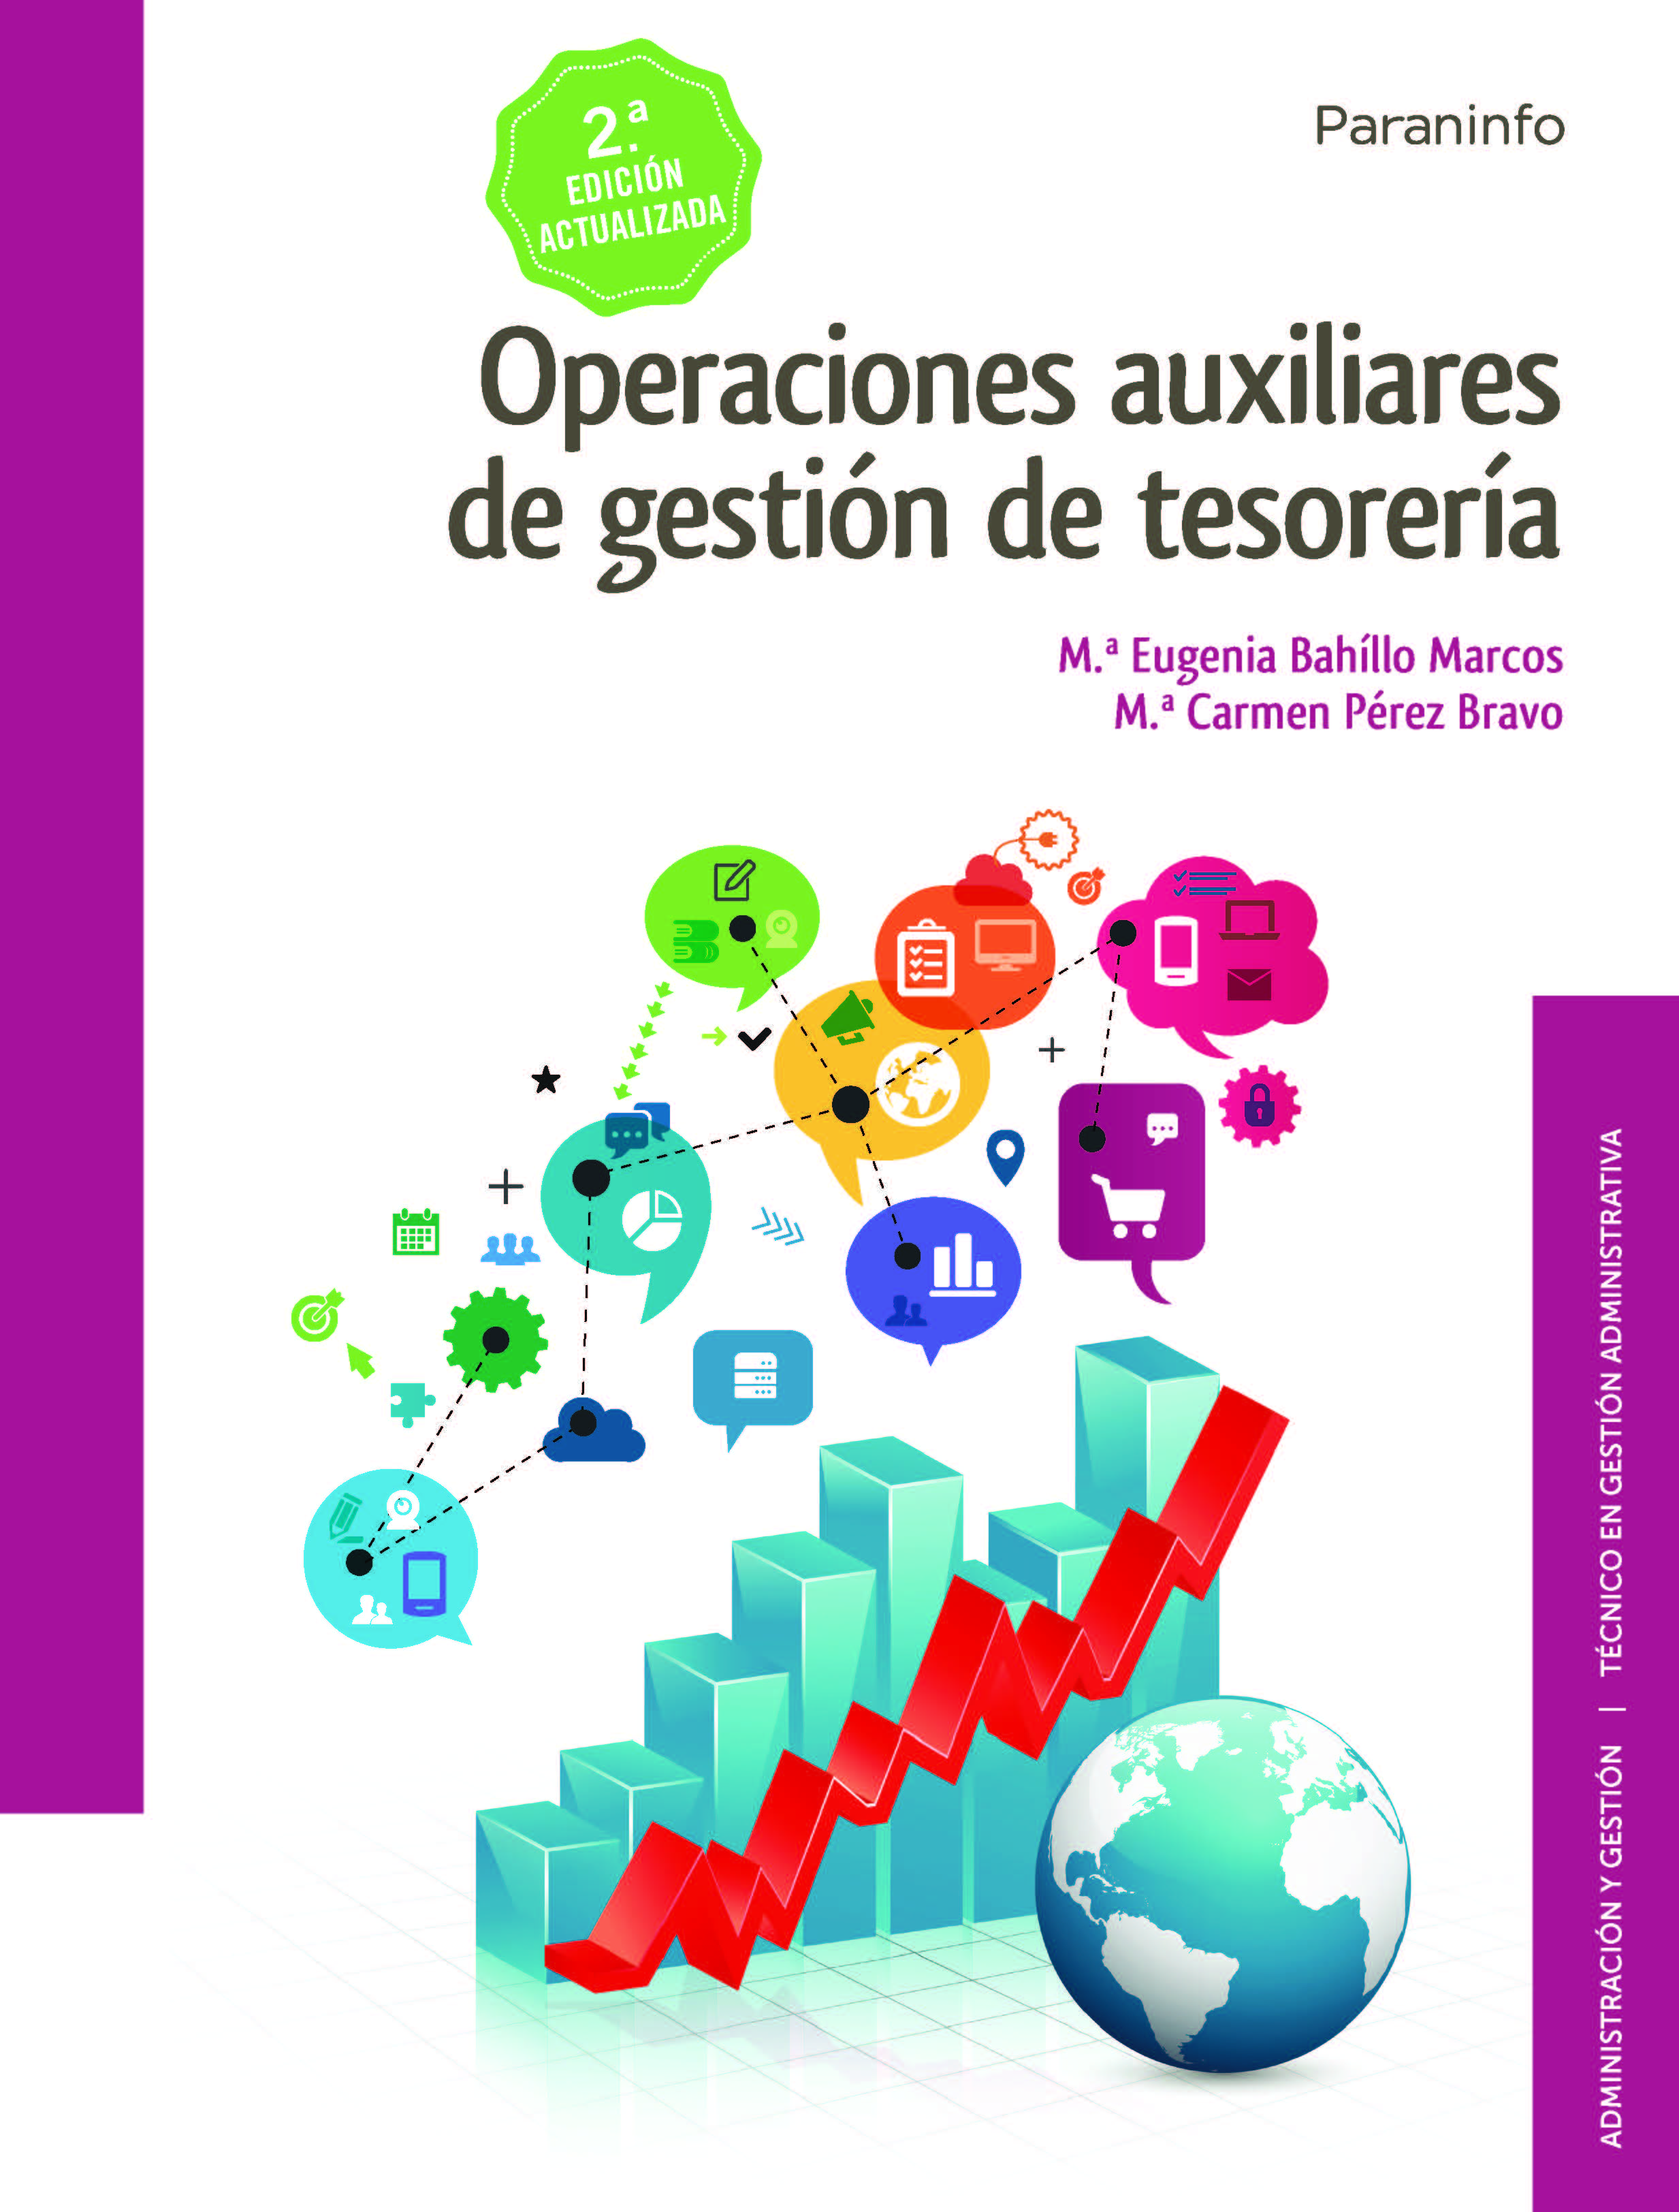 Operaciones auxiliares de gestión de tesorería  2.ª edición.  Paraninfo